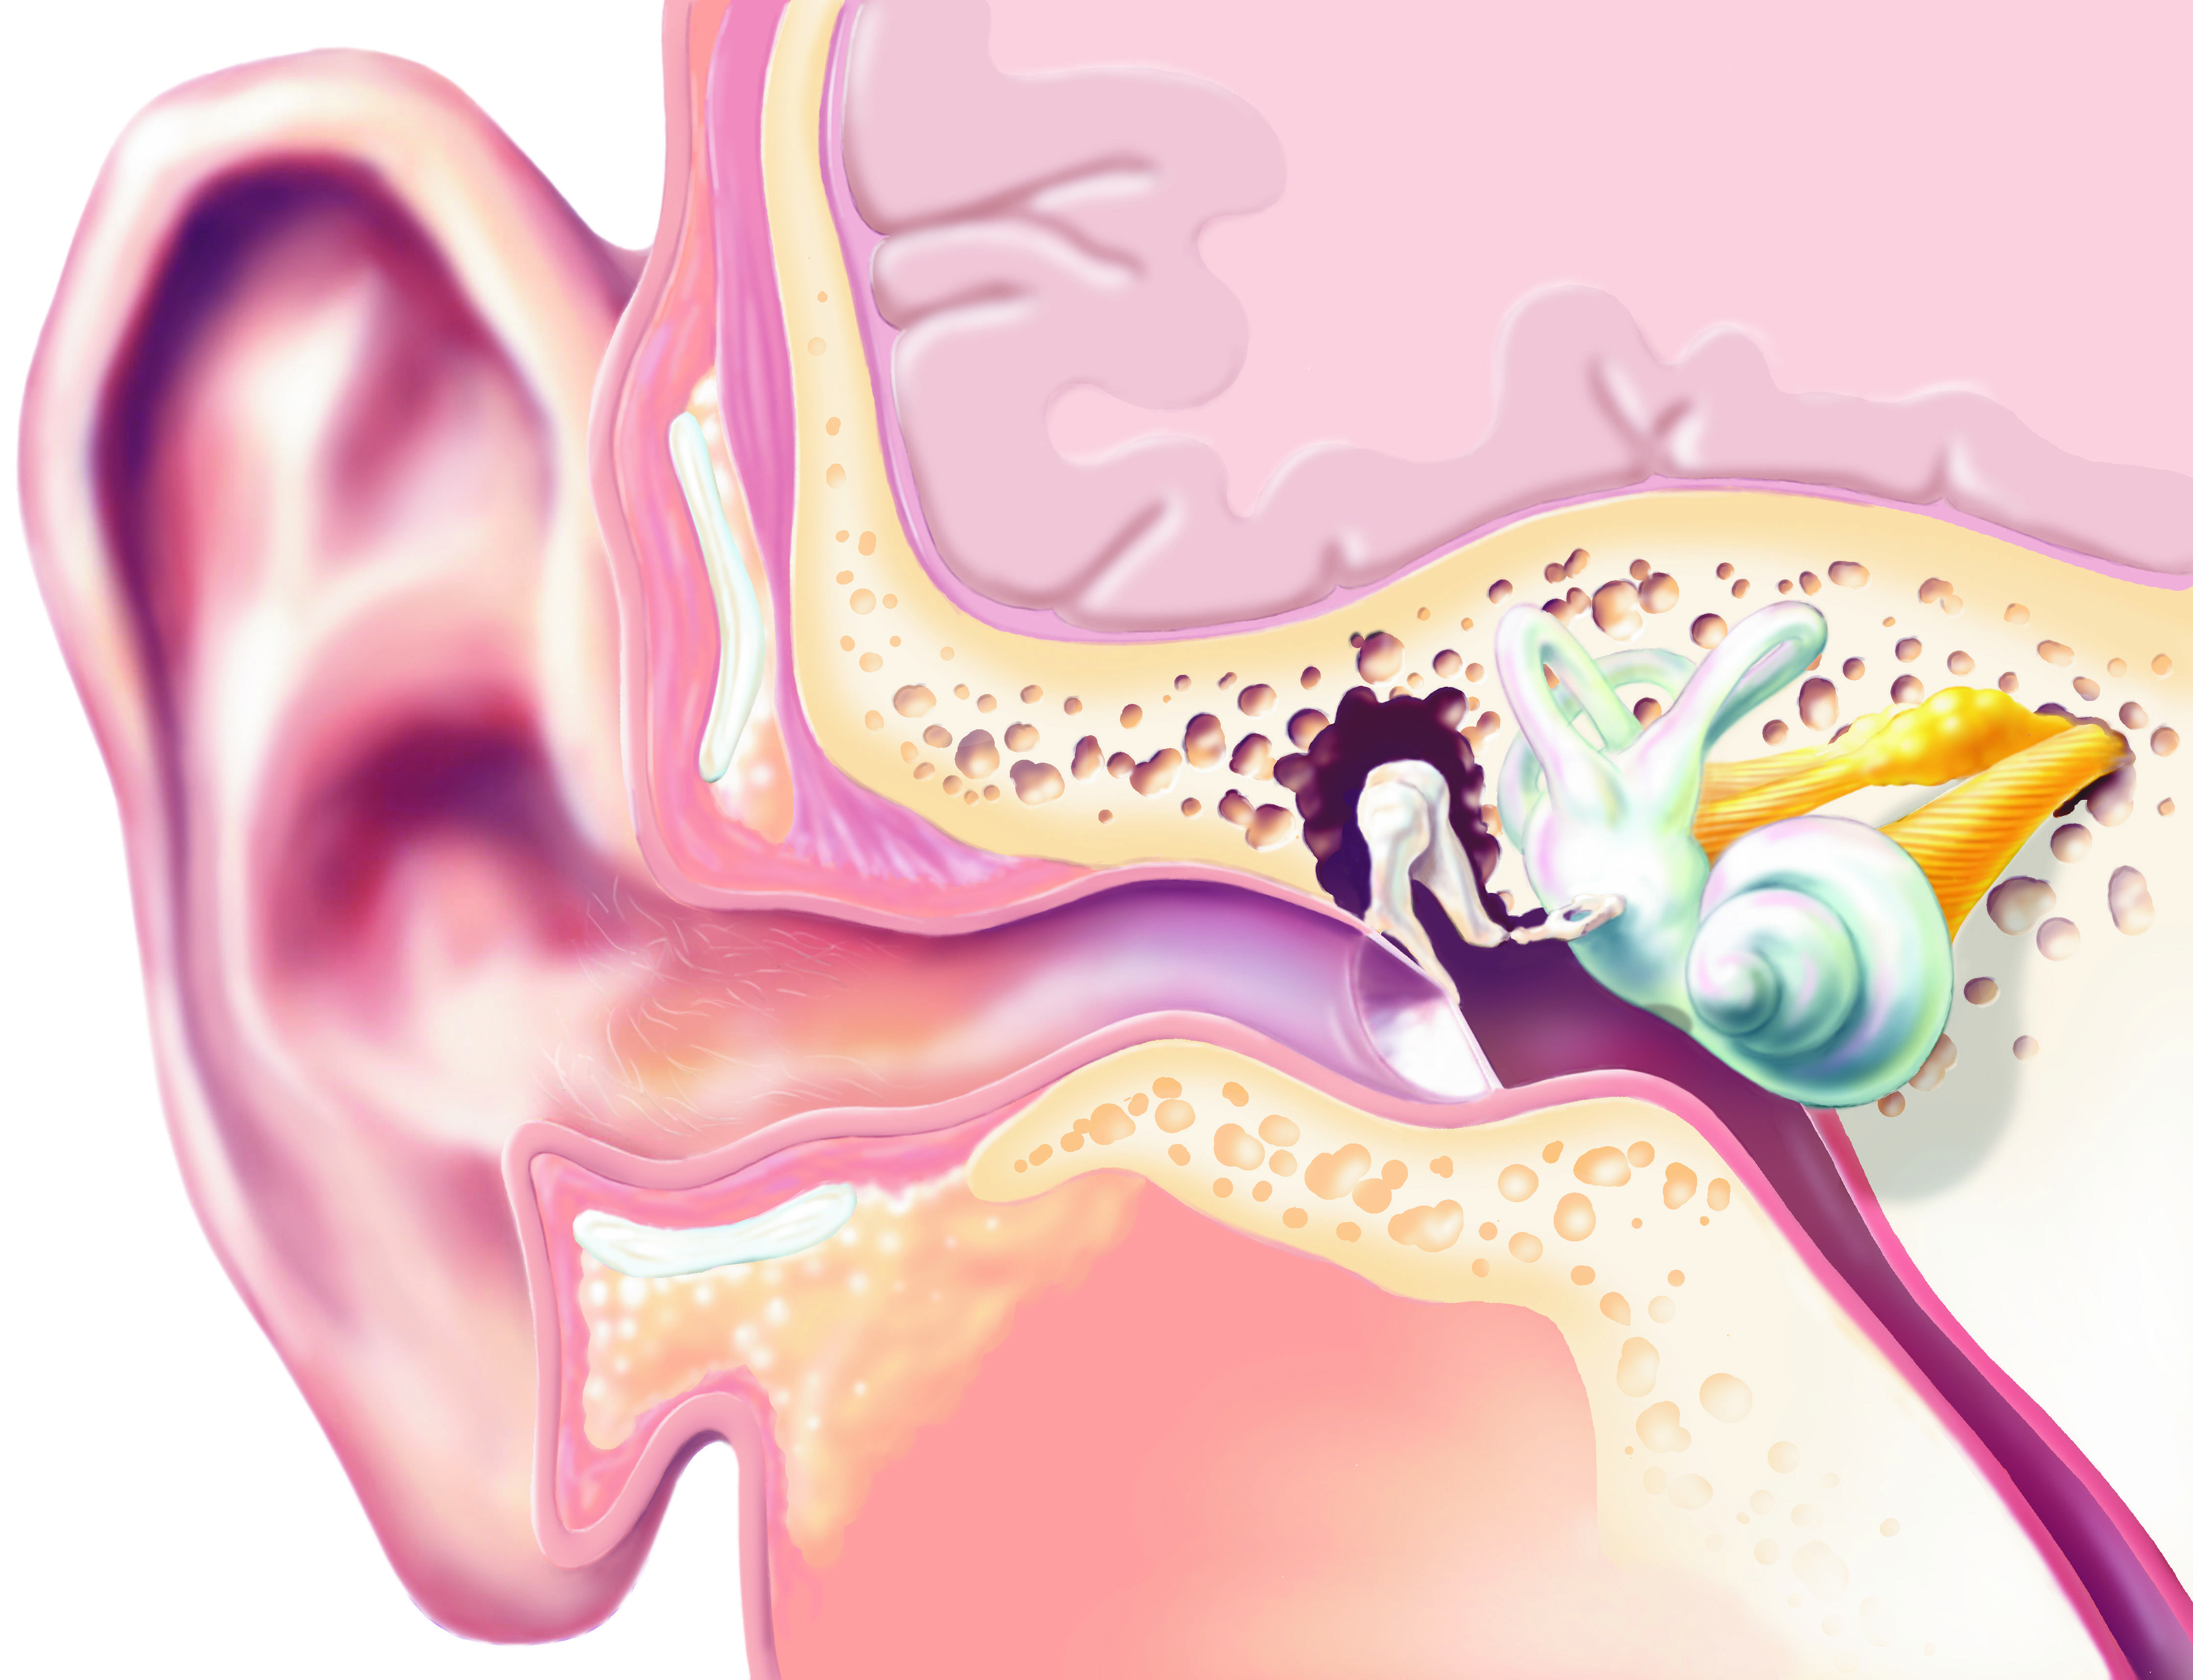 Заложенность уха (ушей). лечение заложенности одного или обоих ушей